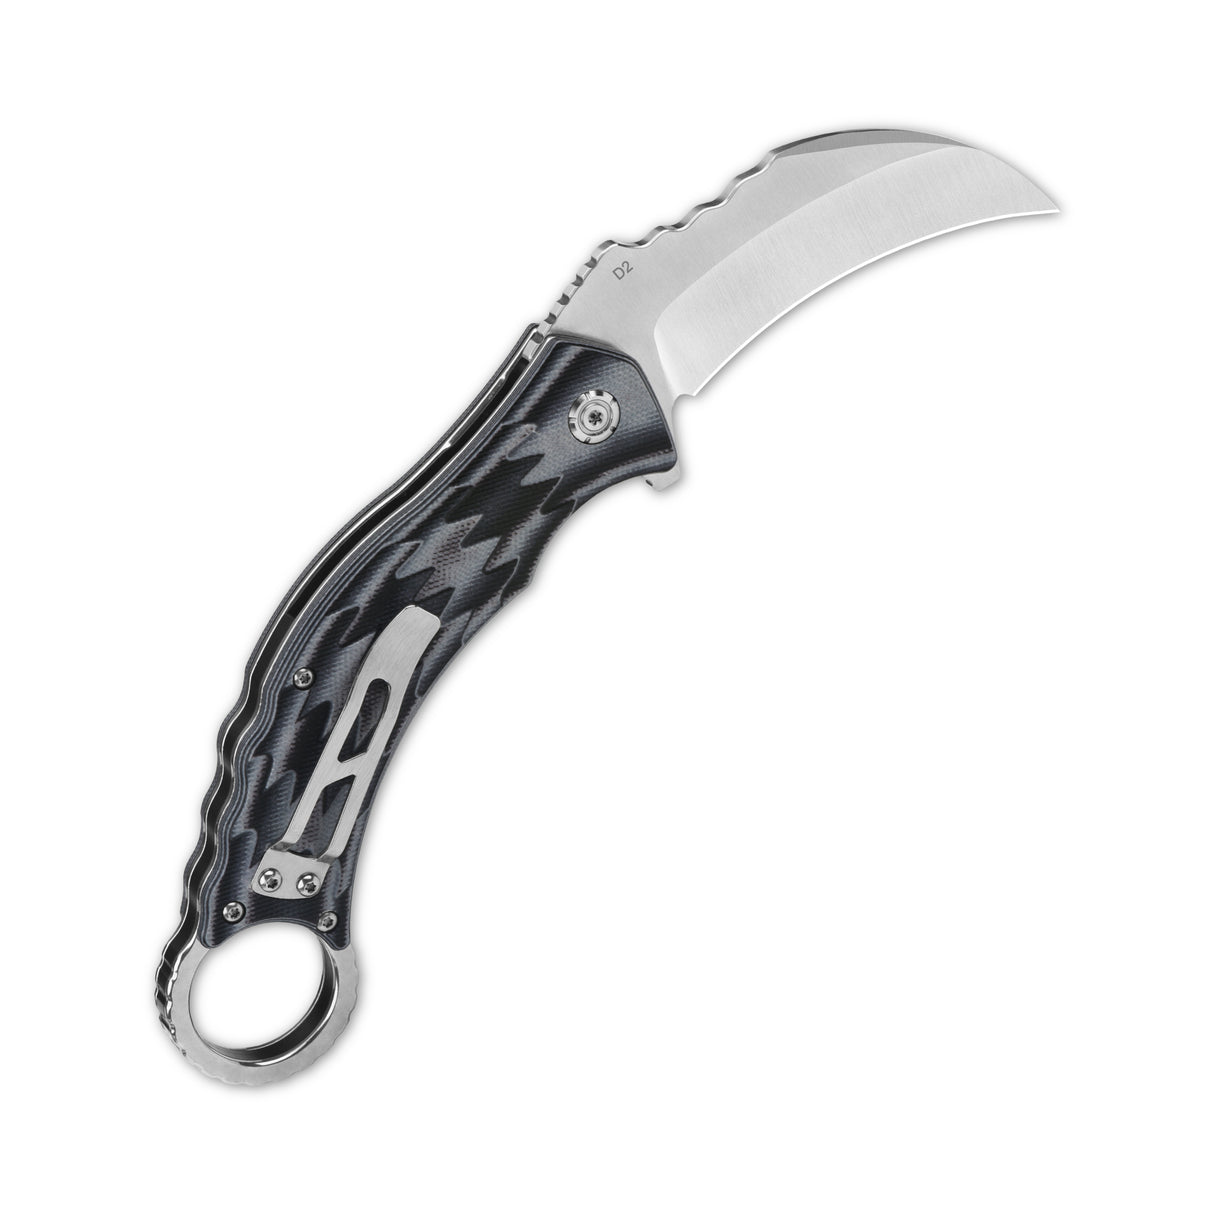 QSP Eagle Liner Lock Pocket Knife D2 Blade G10 Handle